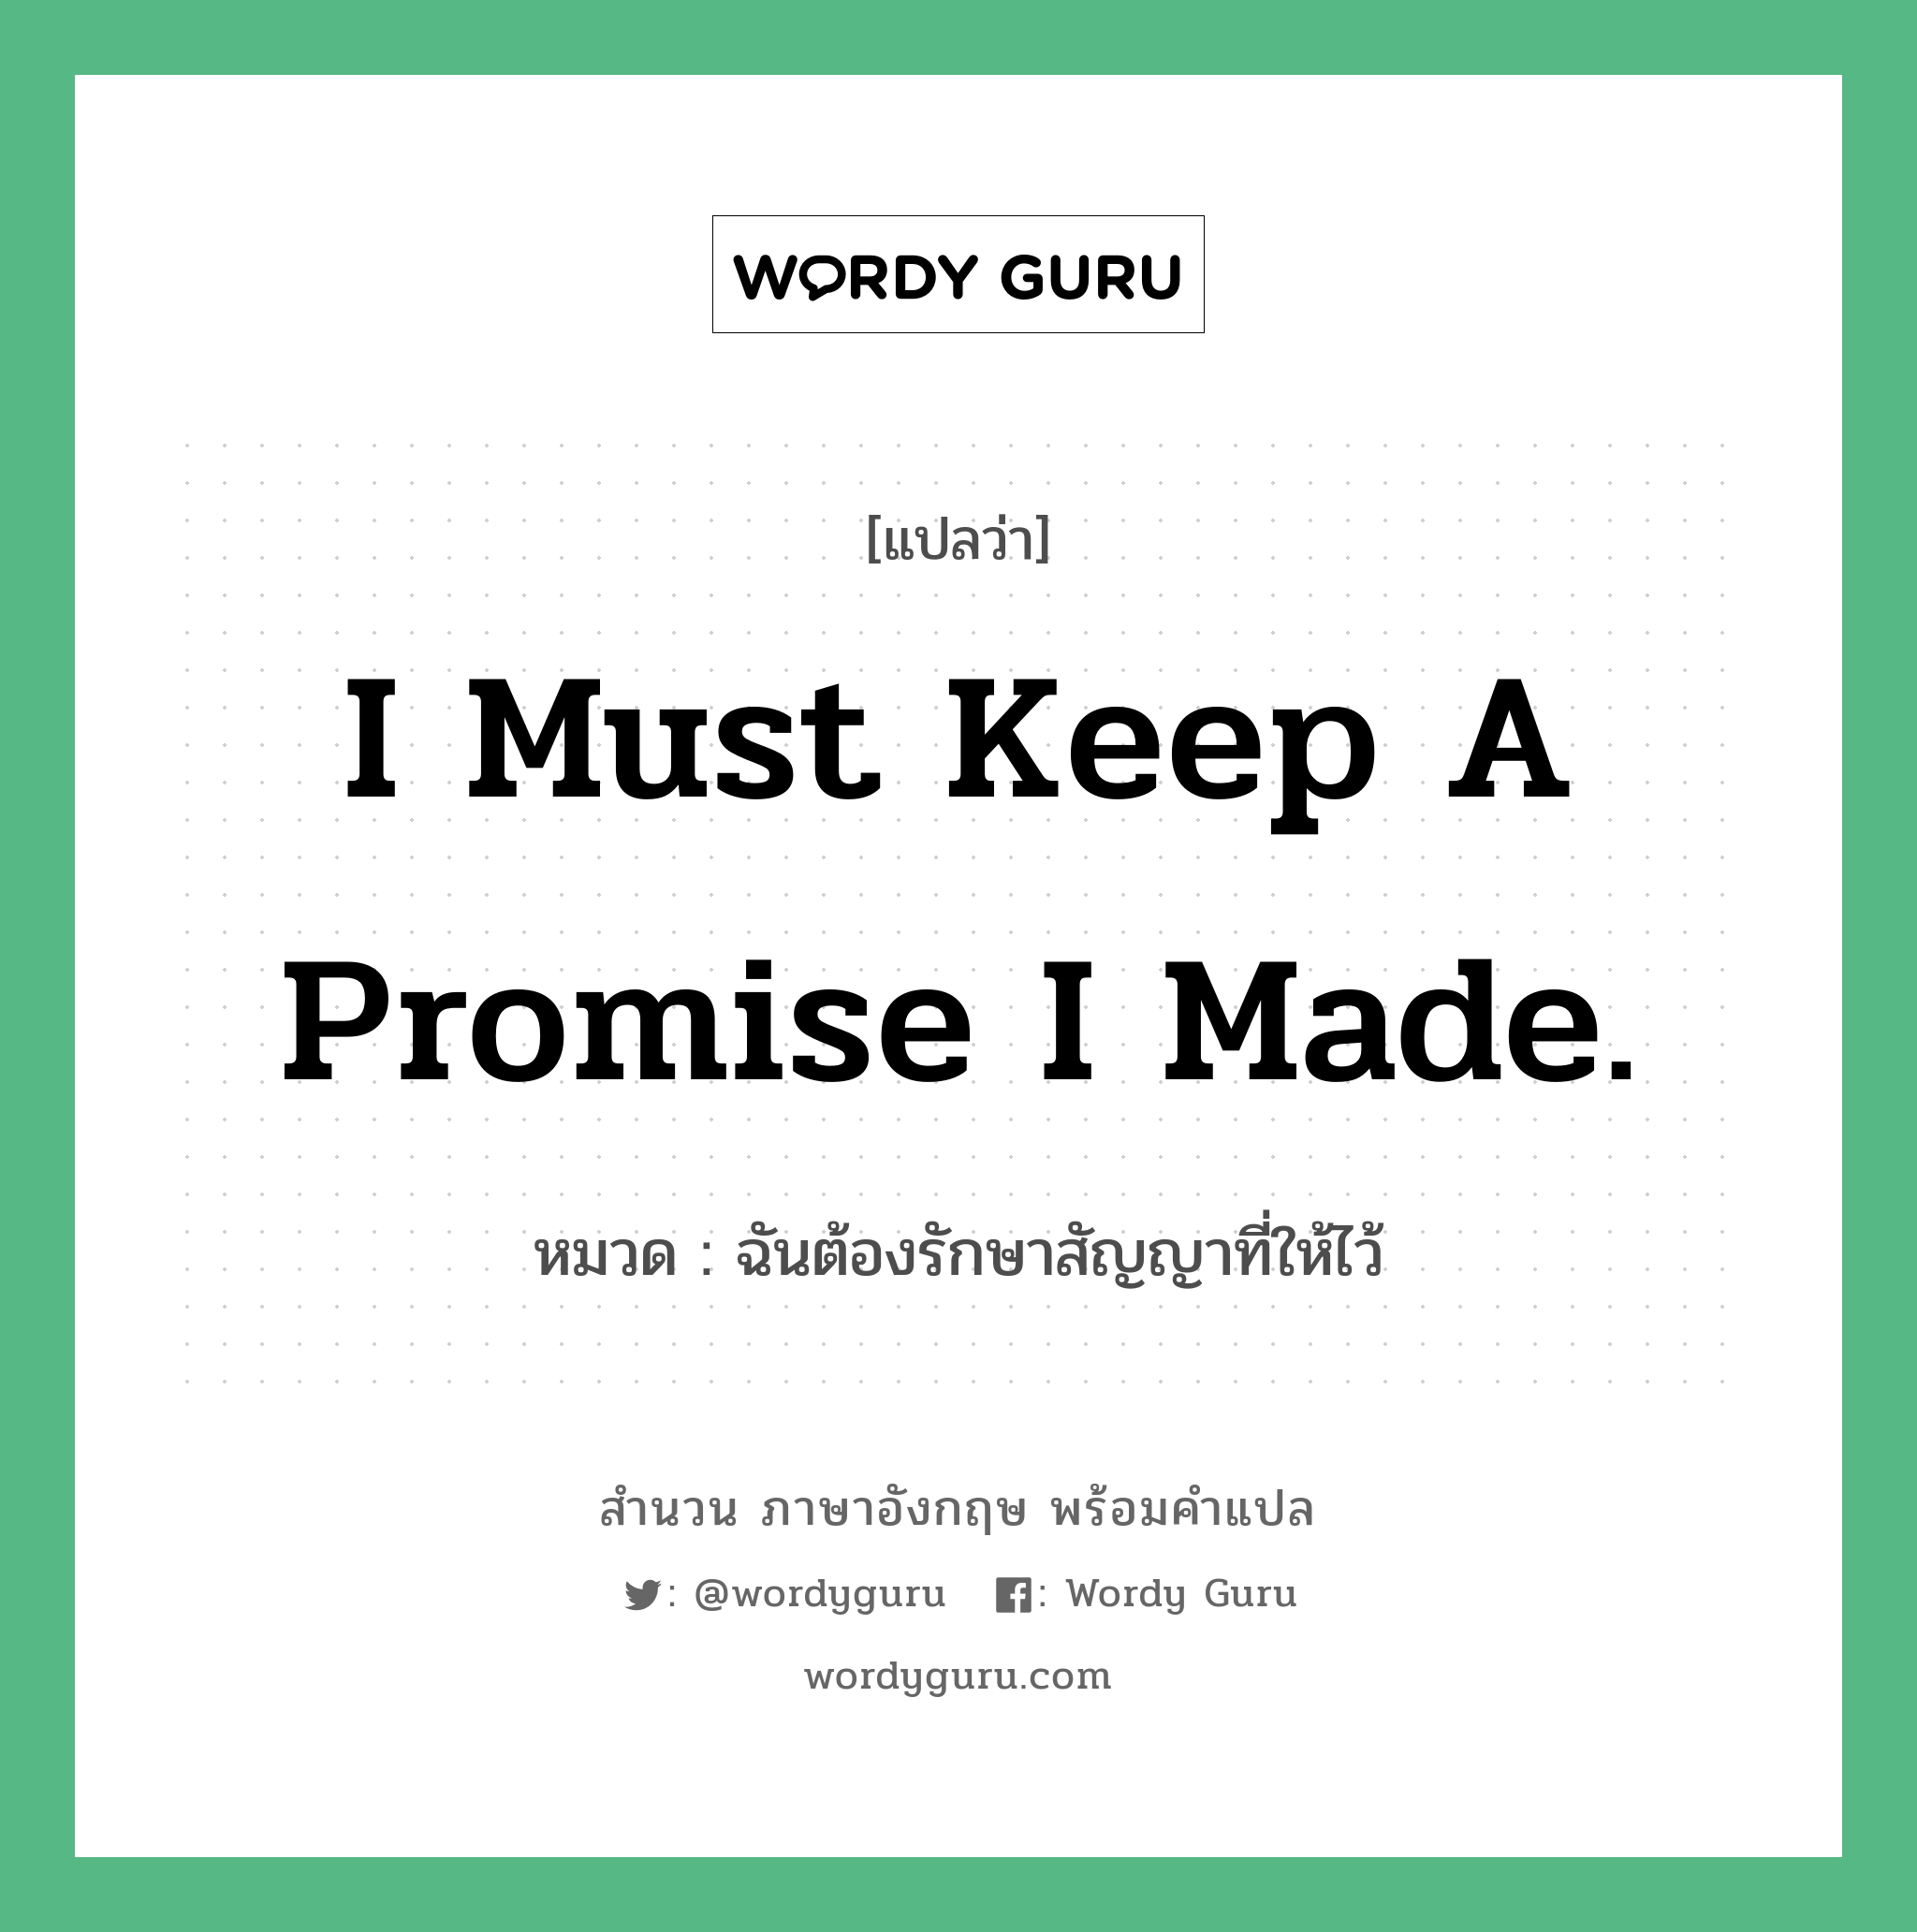 ฉันต้องรักษาสัญญาที่ให้ไว้ ภาษาอังกฤษ?, สำนวนภาษาอังกฤษ ฉันต้องรักษาสัญญาที่ให้ไว้ แปลว่า ฉันต้องรักษาสัญญาที่ให้ไว้ หมวด I must keep a promise I made.